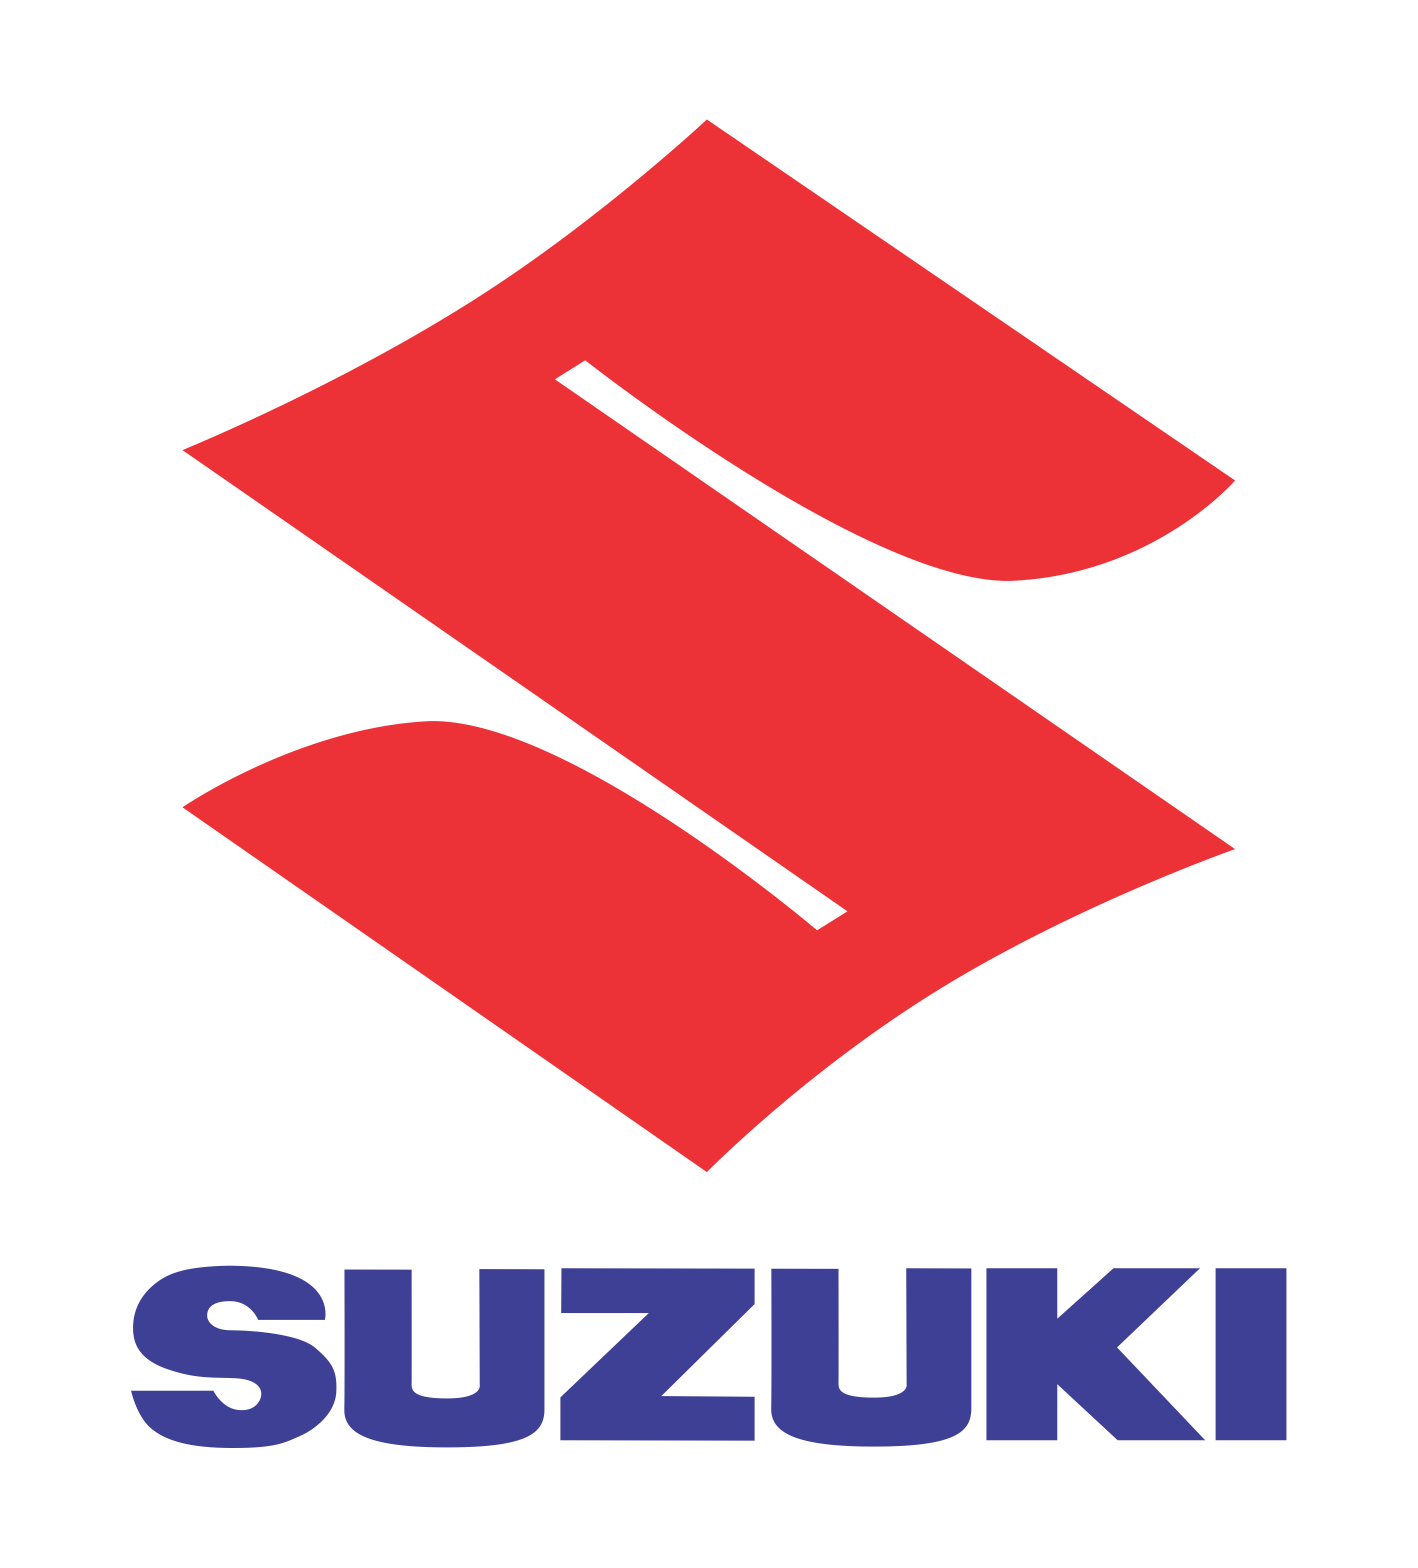 Verkoop uw suzuki snel en eenvoudig via Carswitch.be, de gespecialiseerde opkoper voor suzuki in België.